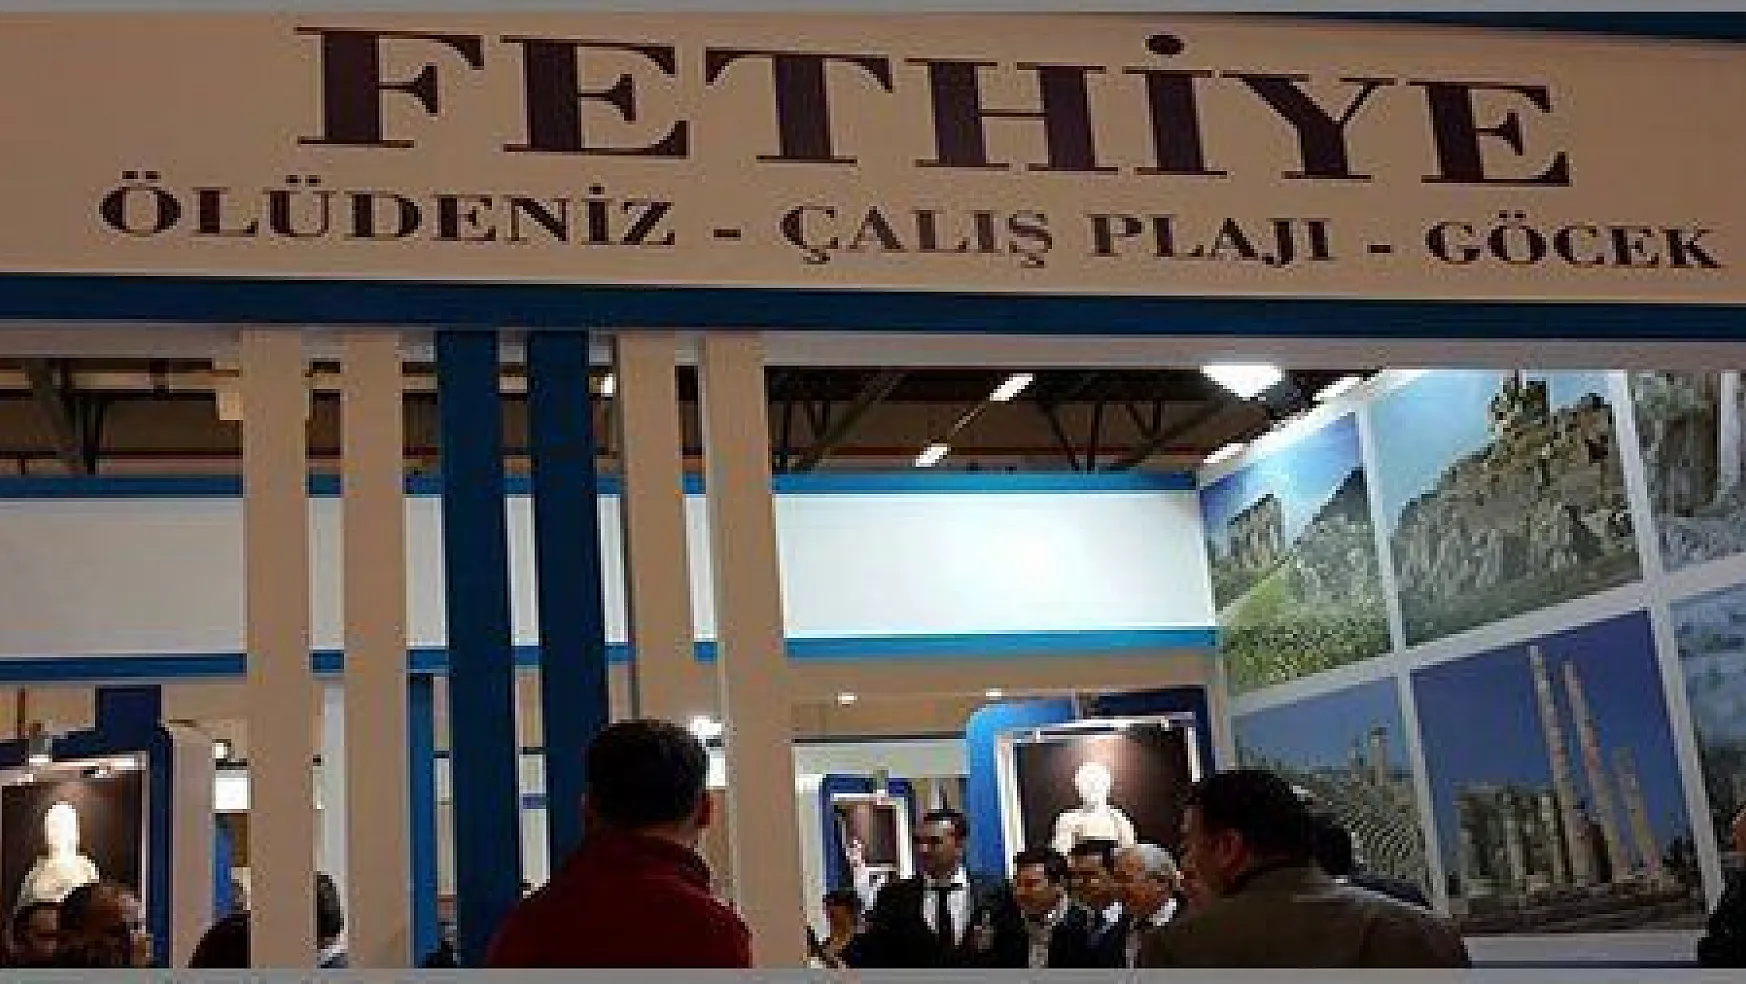  2015 EMITT Fuarında Fethiye ve Seydikemer tanıtıldı